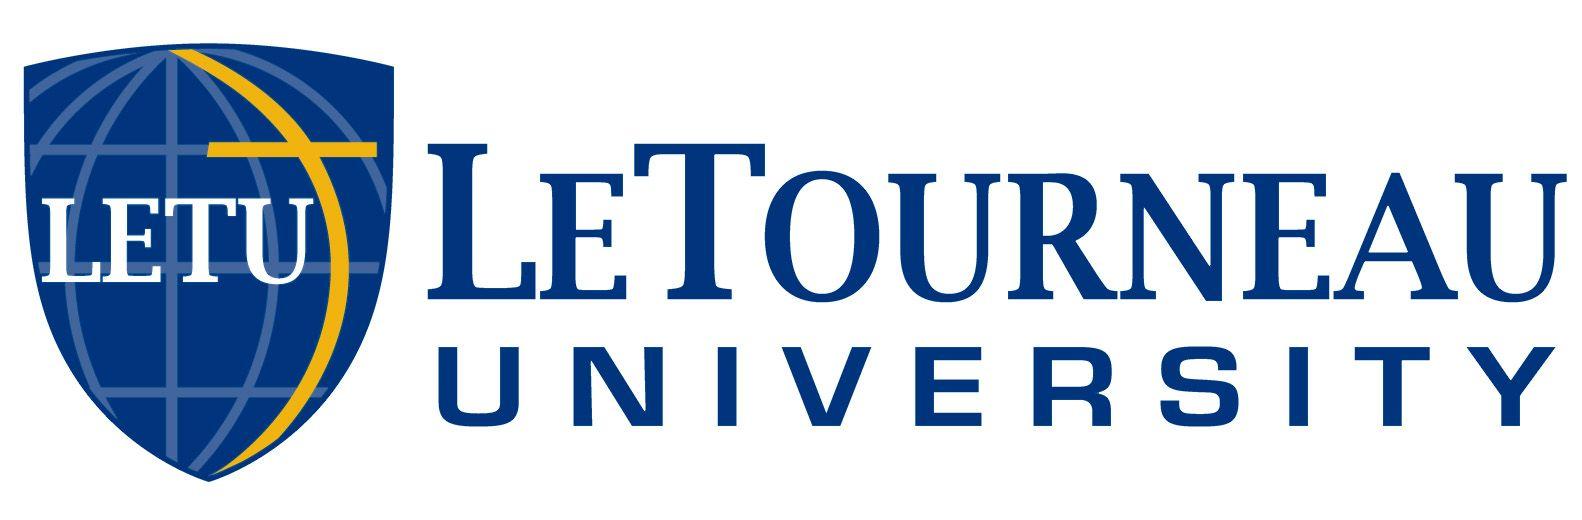 Le Tourneau Logo - LeTourneau University Logo - Sigma Beta Delta